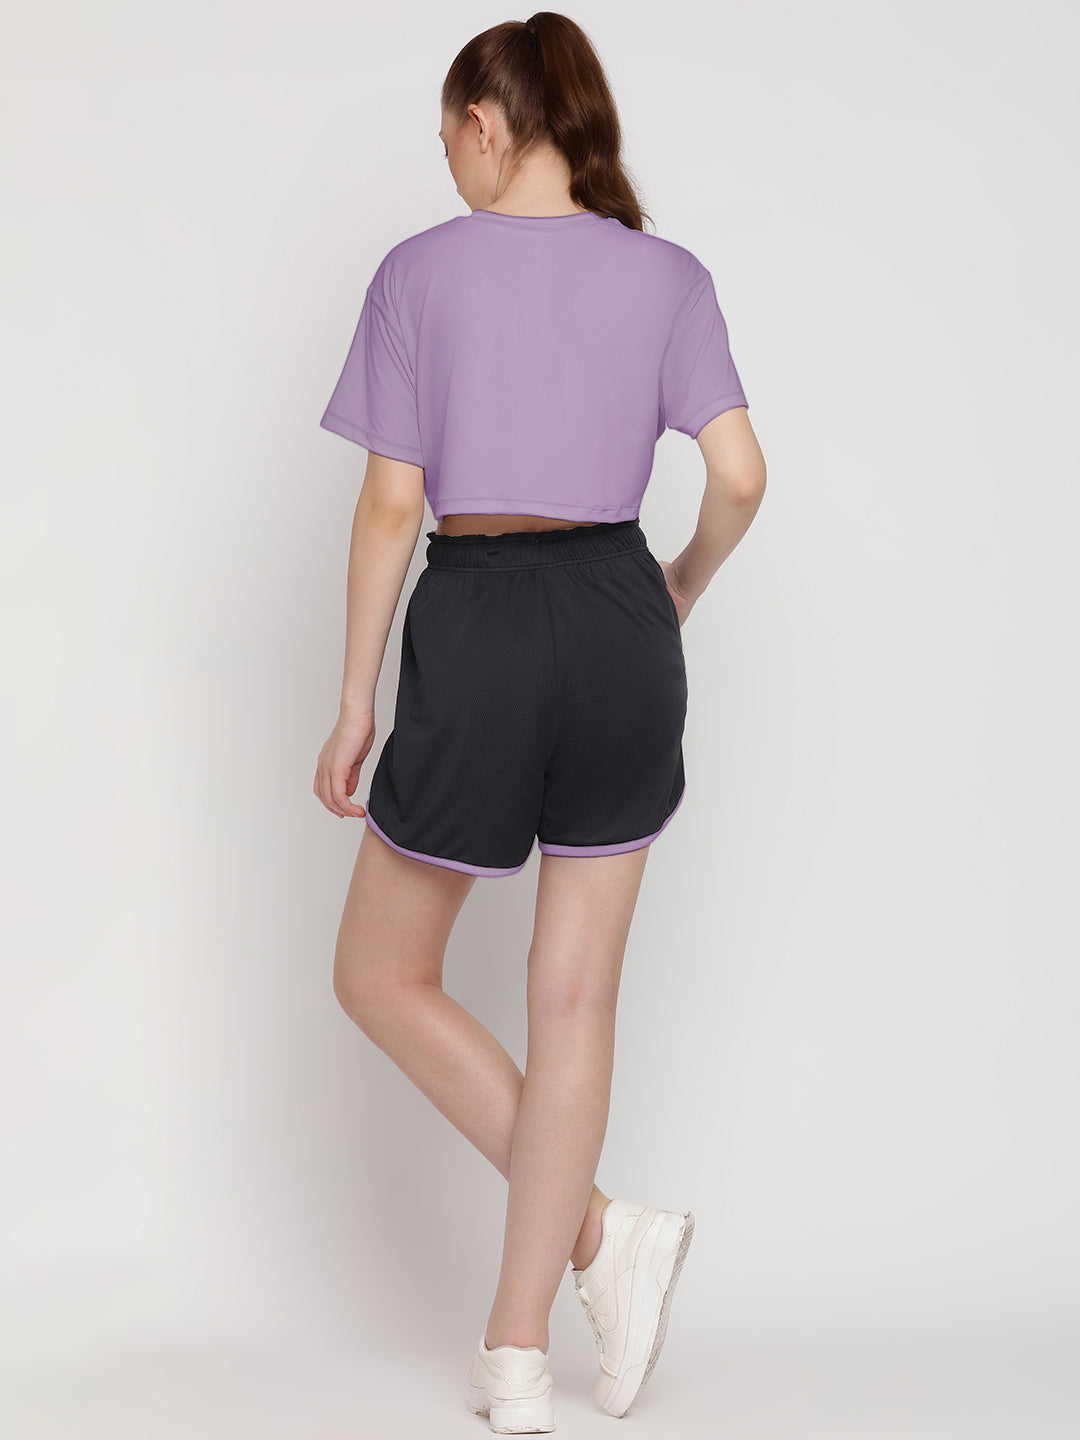 Flow Fit Shorts & Crop Top Set - Miami Purple